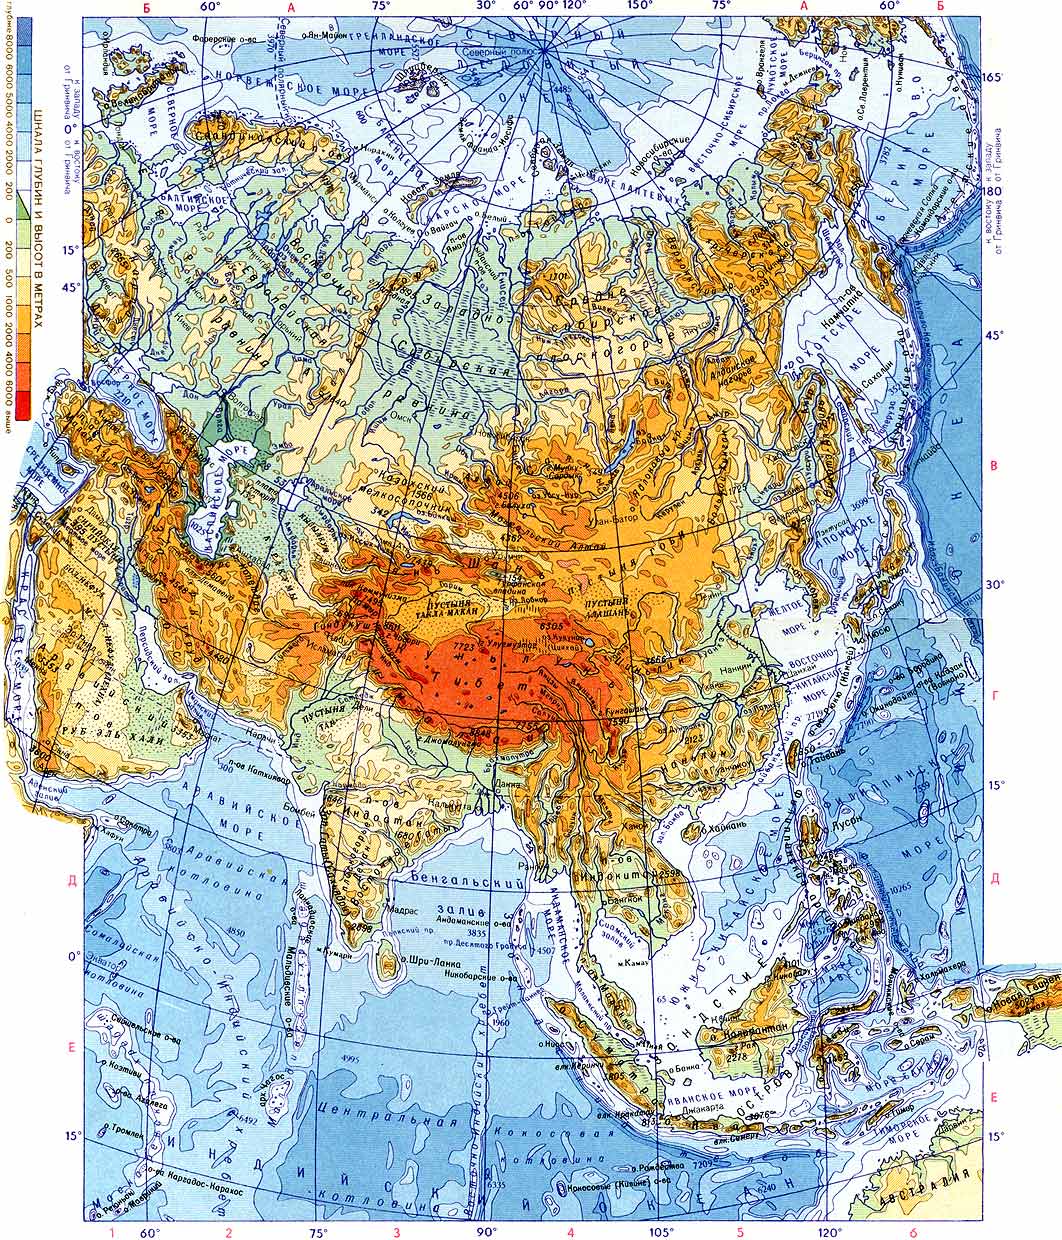 Карты. Атлас мира: Физическая карта Азии.